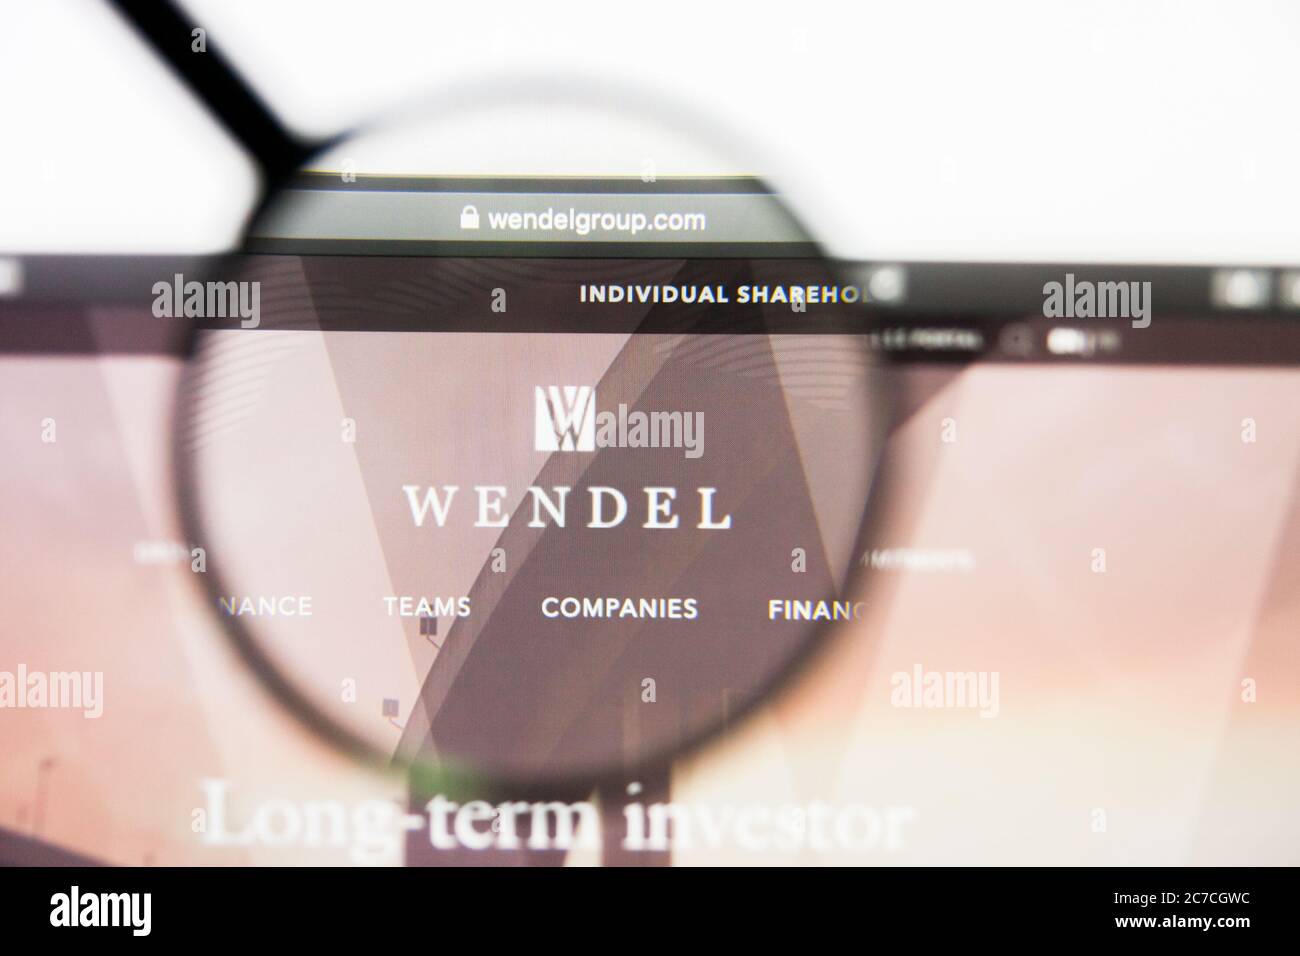 Los Angeles, California, USA - 23 Marzo 2019: Editoriale illustrativo della homepage del sito Web di Wendel. Logo Wendel visibile sullo schermo. Foto Stock